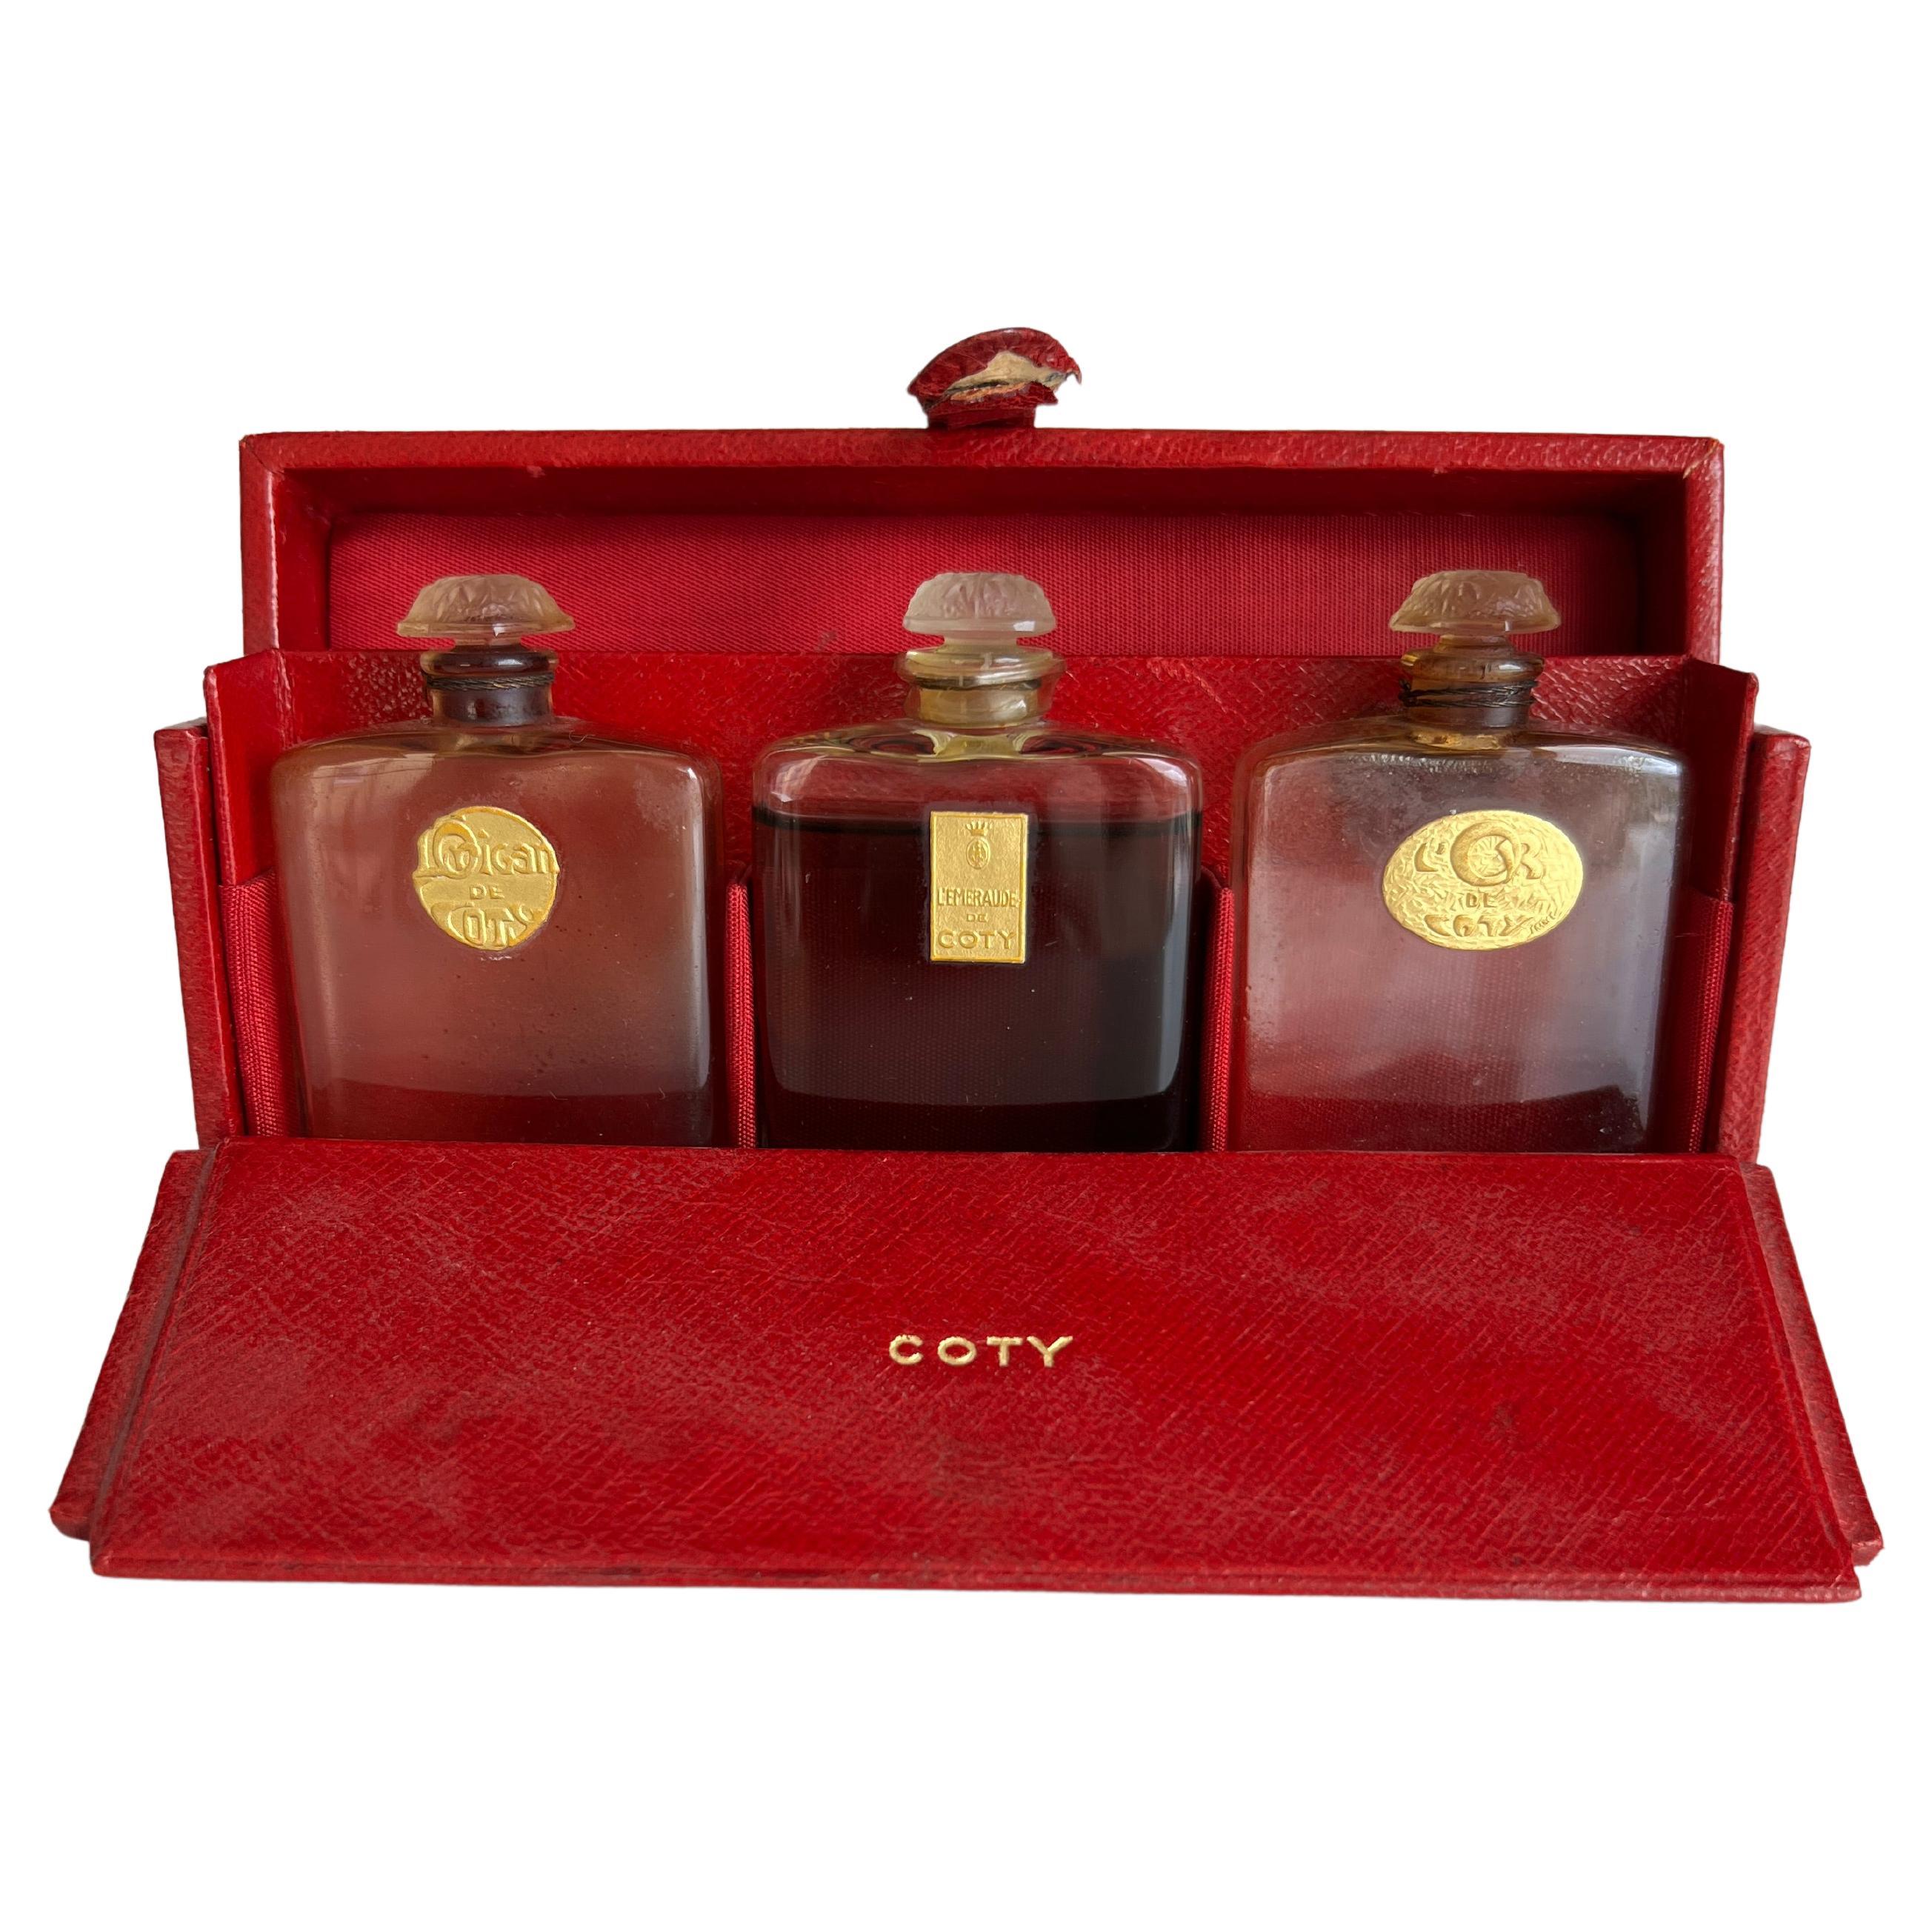 Französisches Parfüm-Set von Lalique Coty Voyager aus den 1920er Jahren und rotes Ledergehäuse, L'Origan